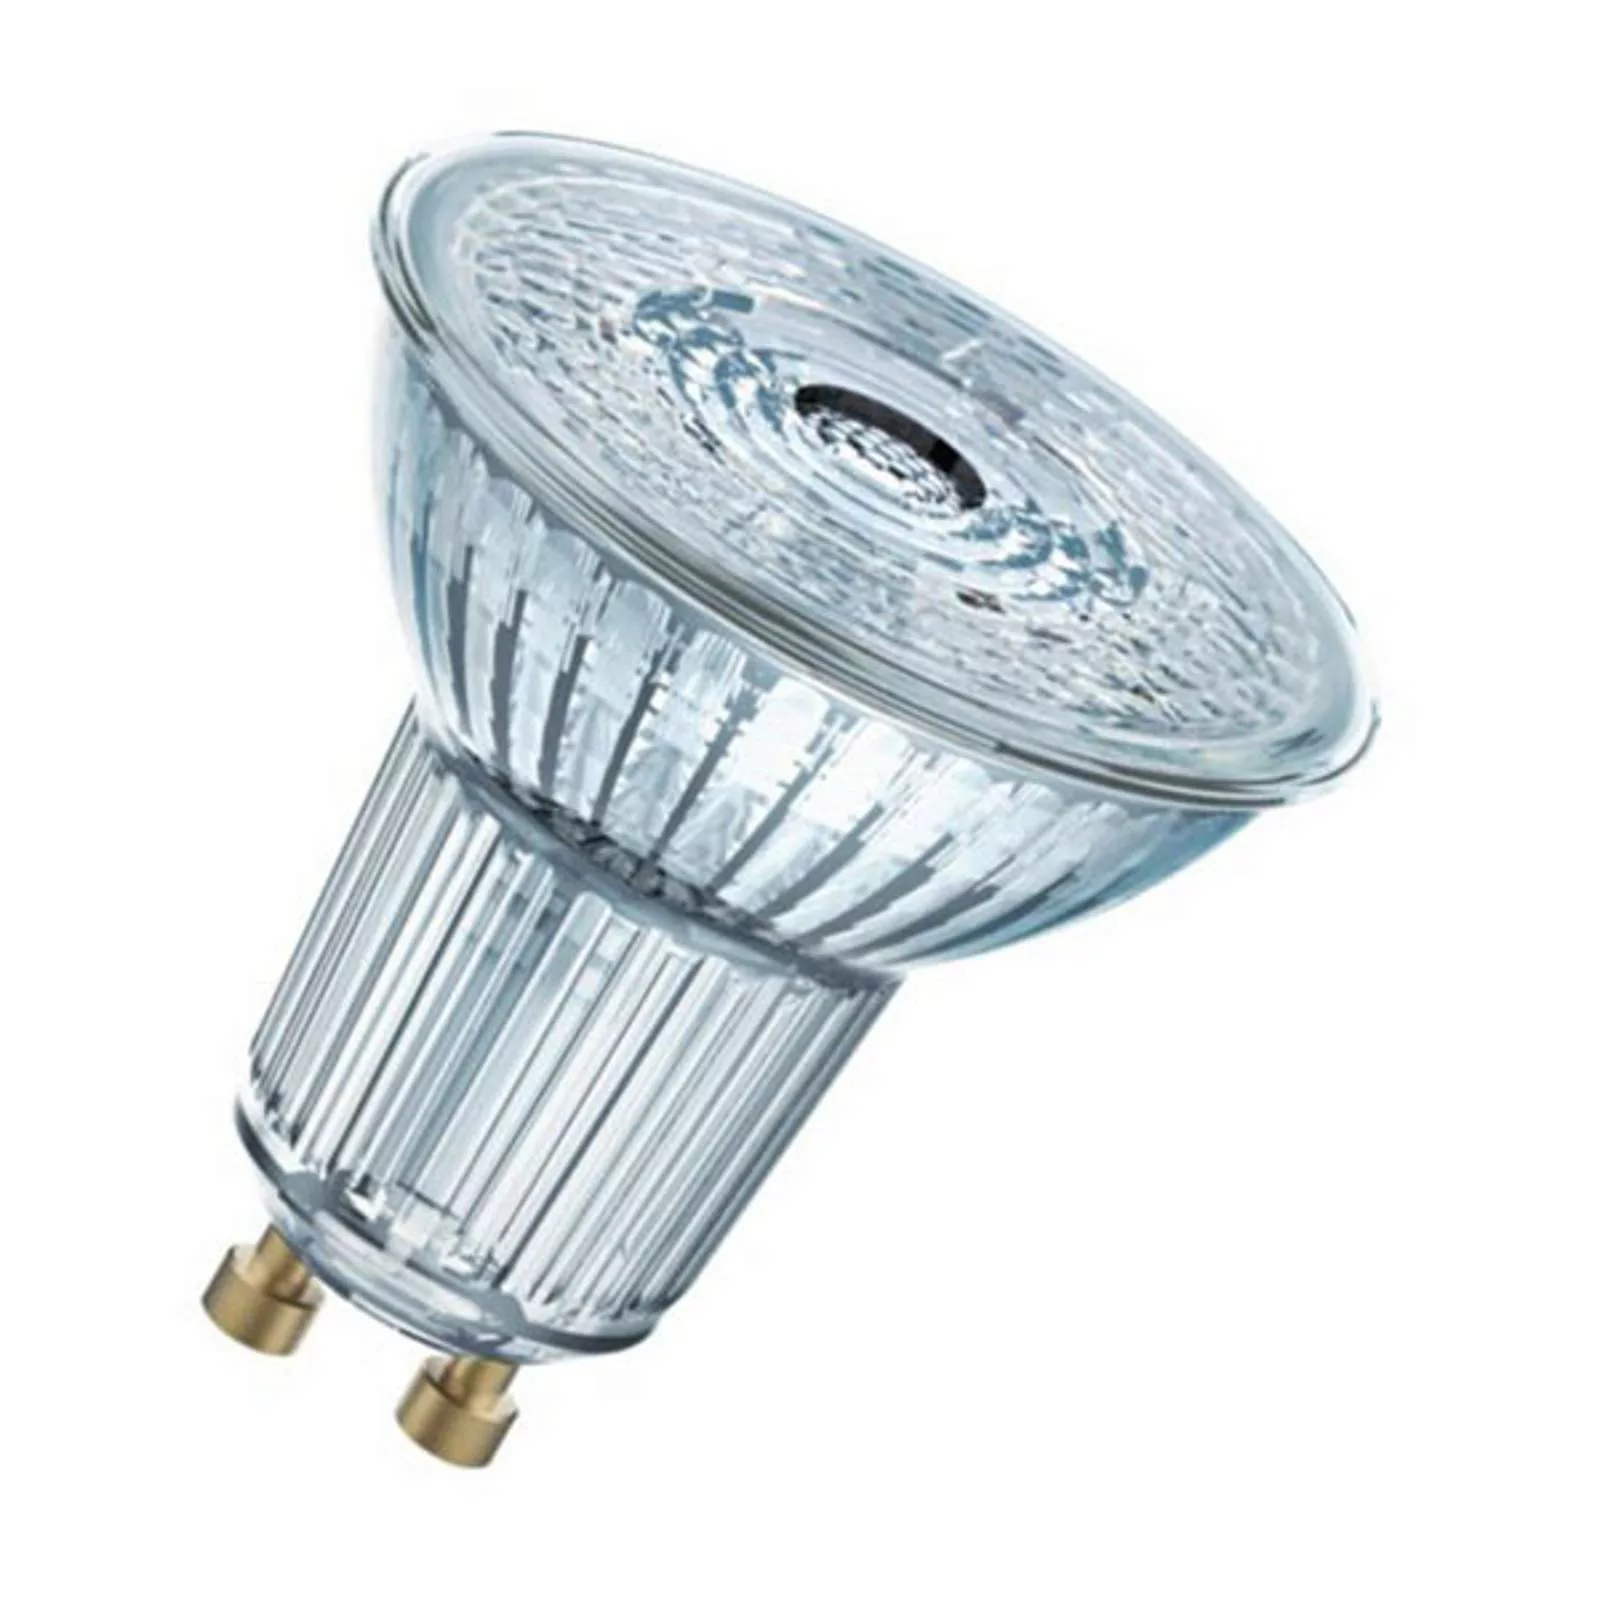 Osram LED Lampe ersetzt 50W Gu10 Reflektor - Par16 in Transparent 4,3W 350l günstig online kaufen